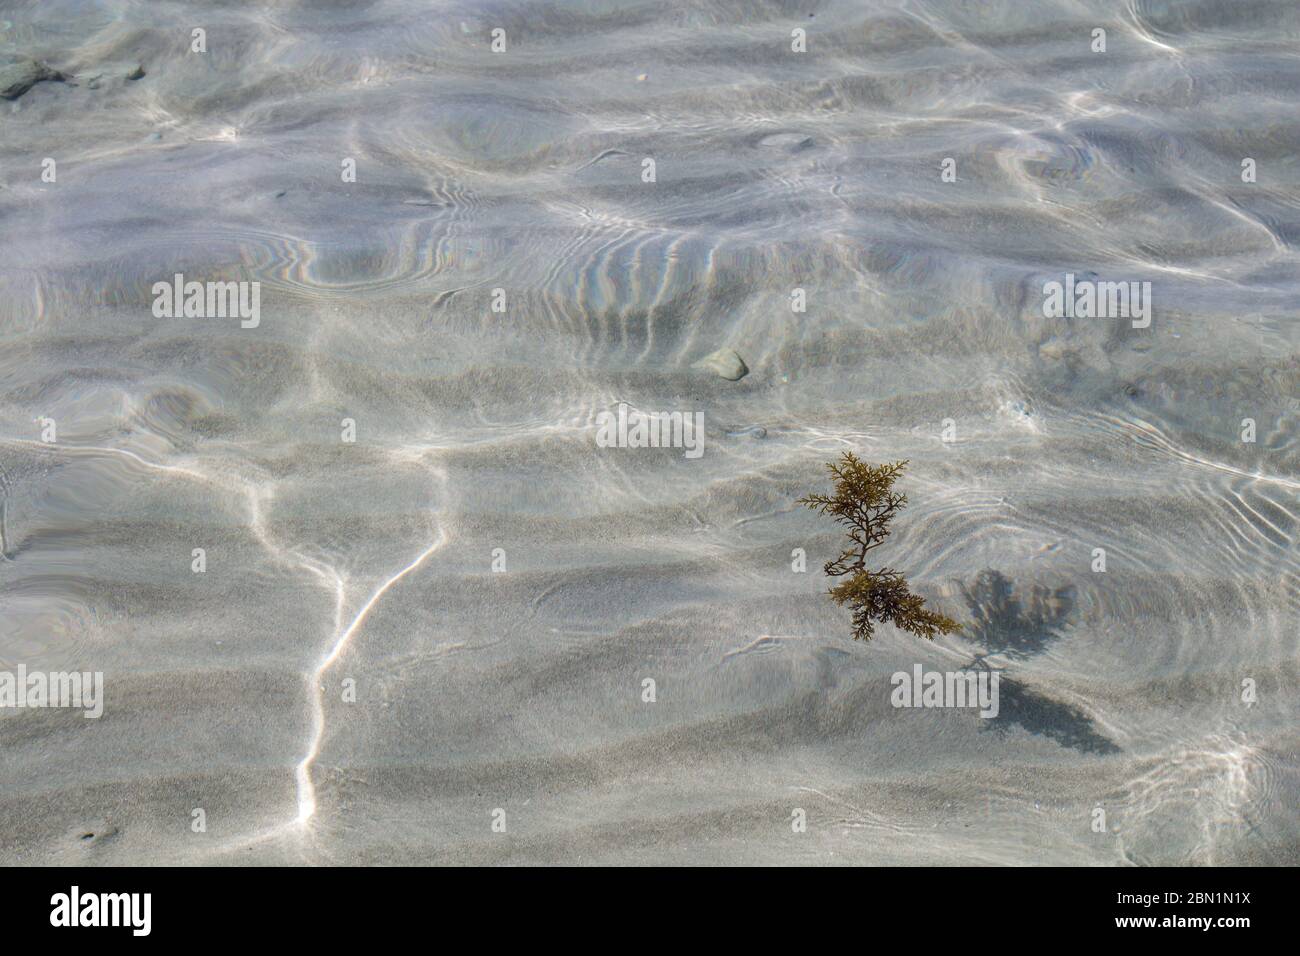 Pulire una chiara acqua poco profonda della spiaggia della città con un fondo sabbioso. Struttura di piccole onde e luce del sole. Alghe nell'acqua. Alghero, Sardegna, IT Foto Stock